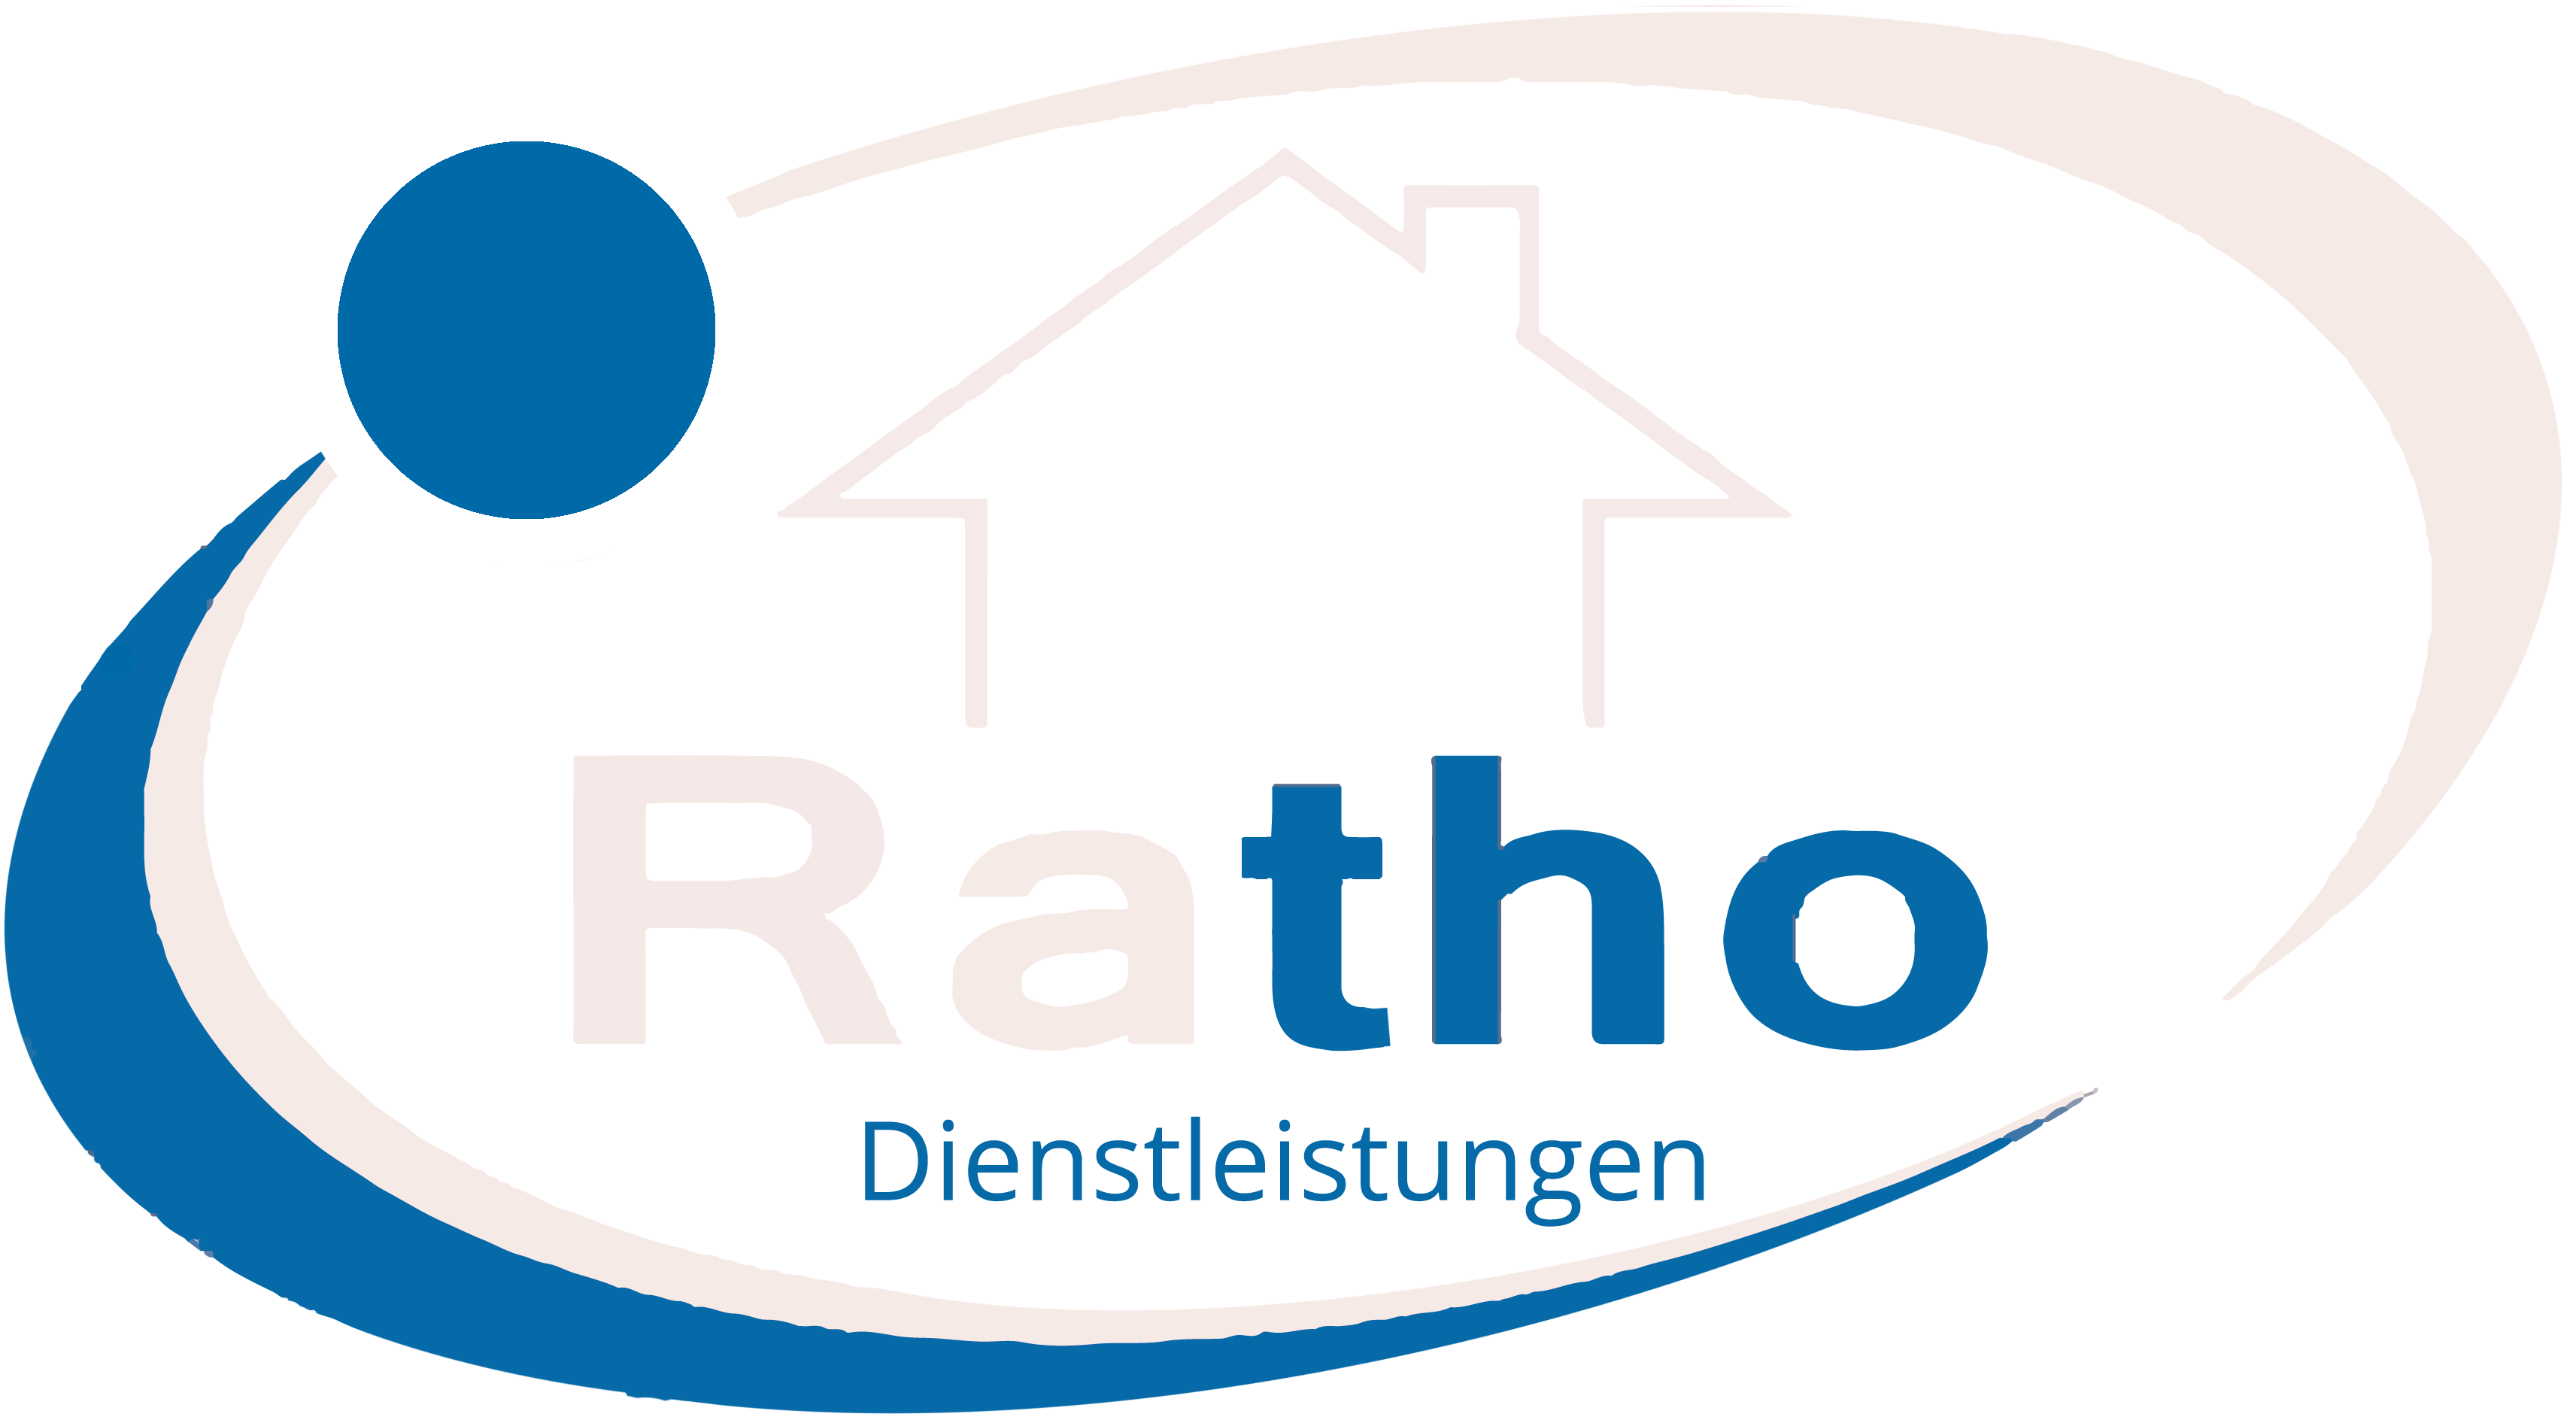 Ratho am Niederrhein